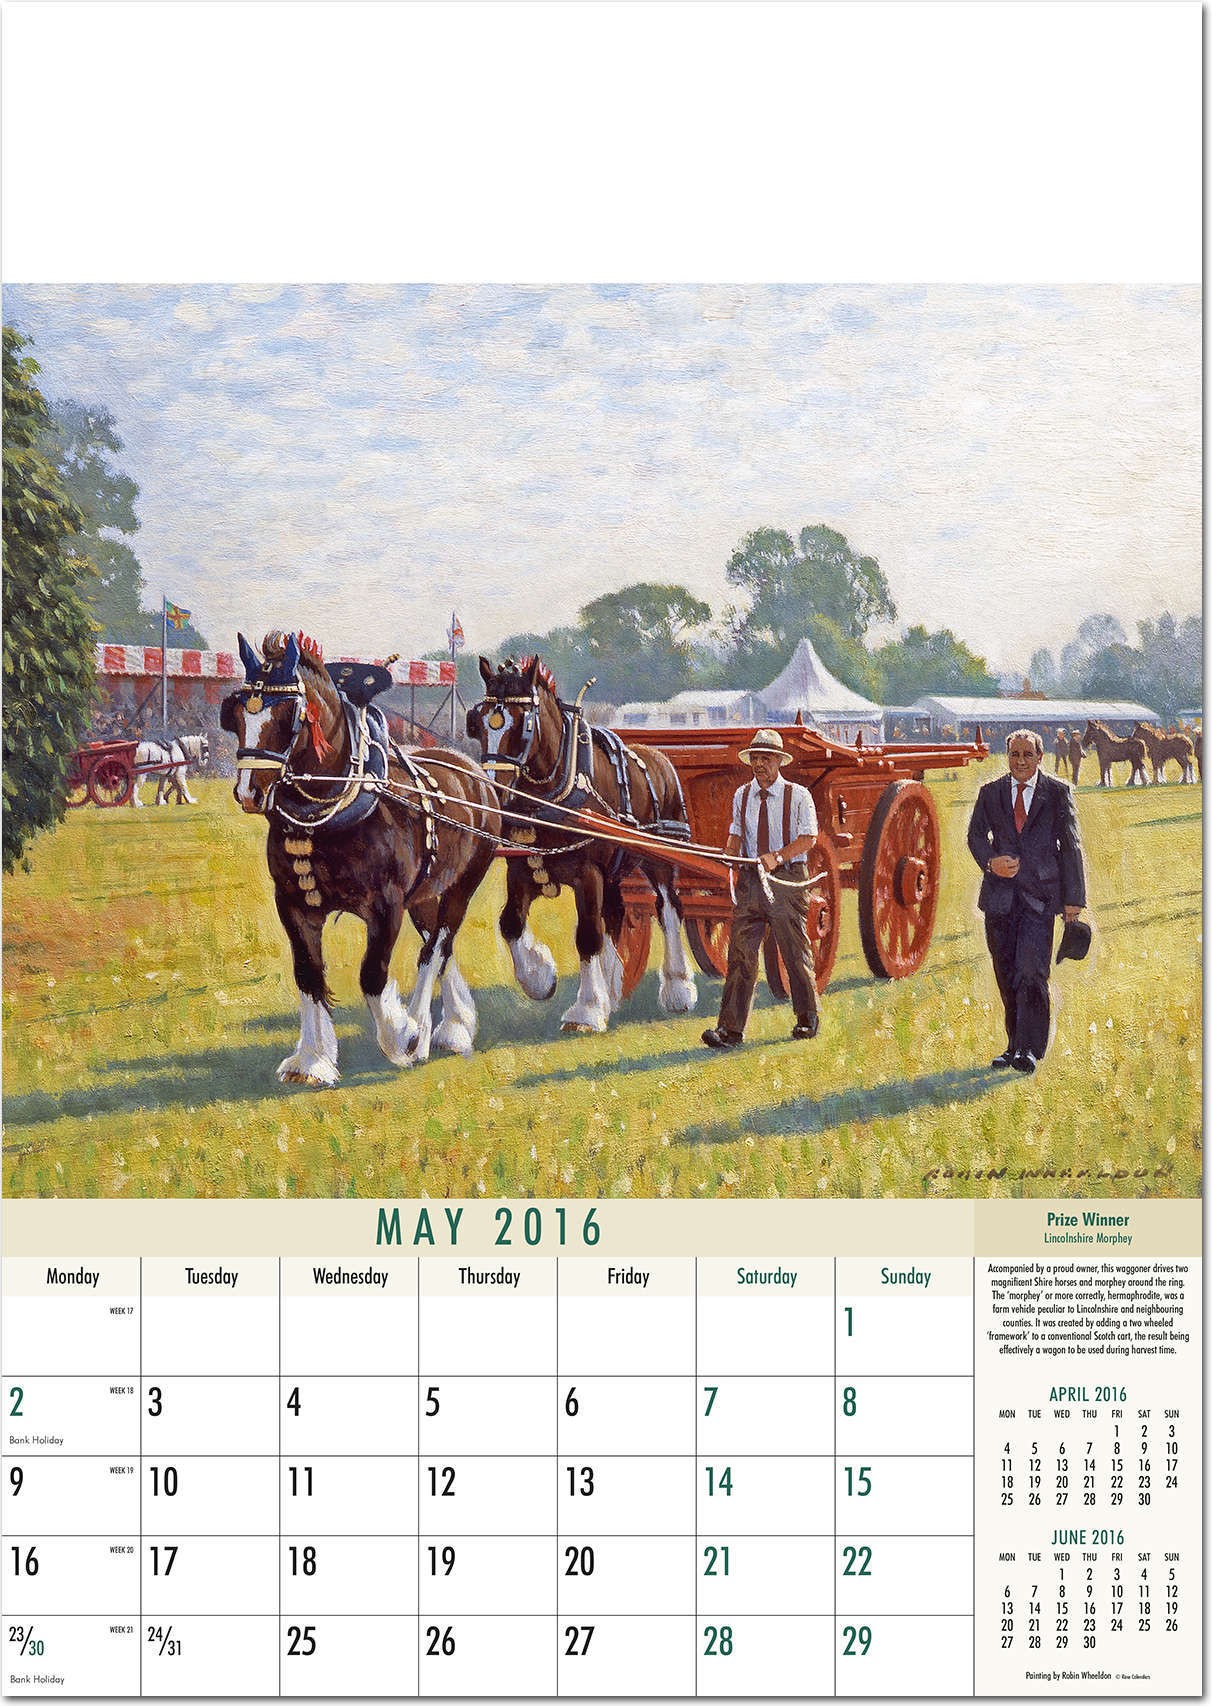 Rural Heritage Calendar 2016 Rose Calendars